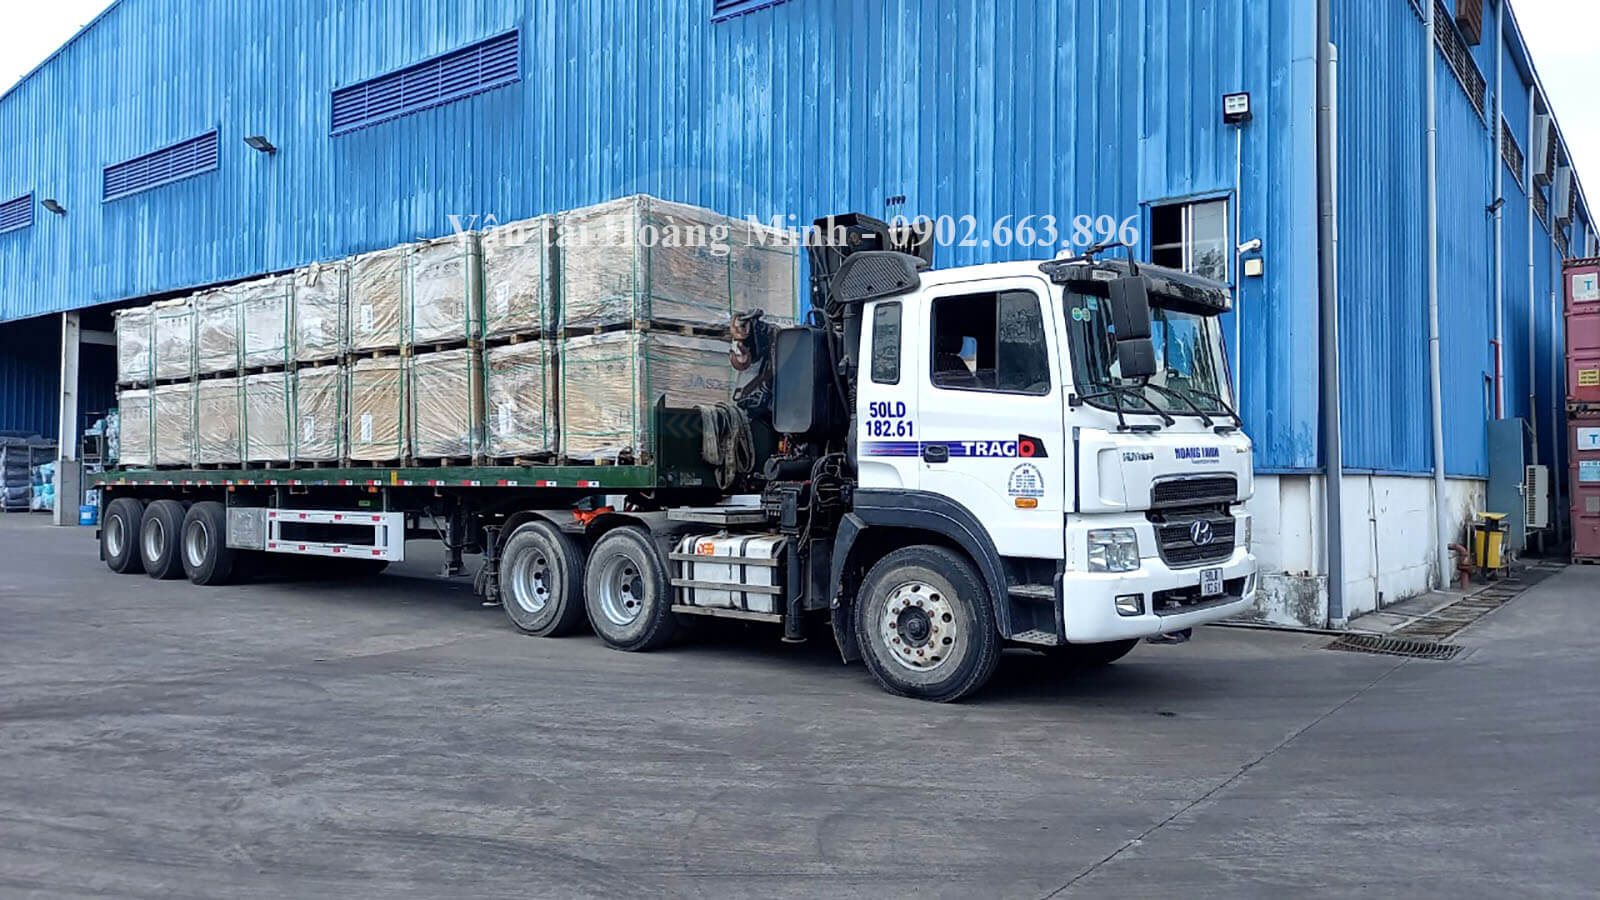 Dịch vụ cho thuê xe tải chở hàng Cà Mau trọn gói - uy tín số 1 TpHCM.jpg